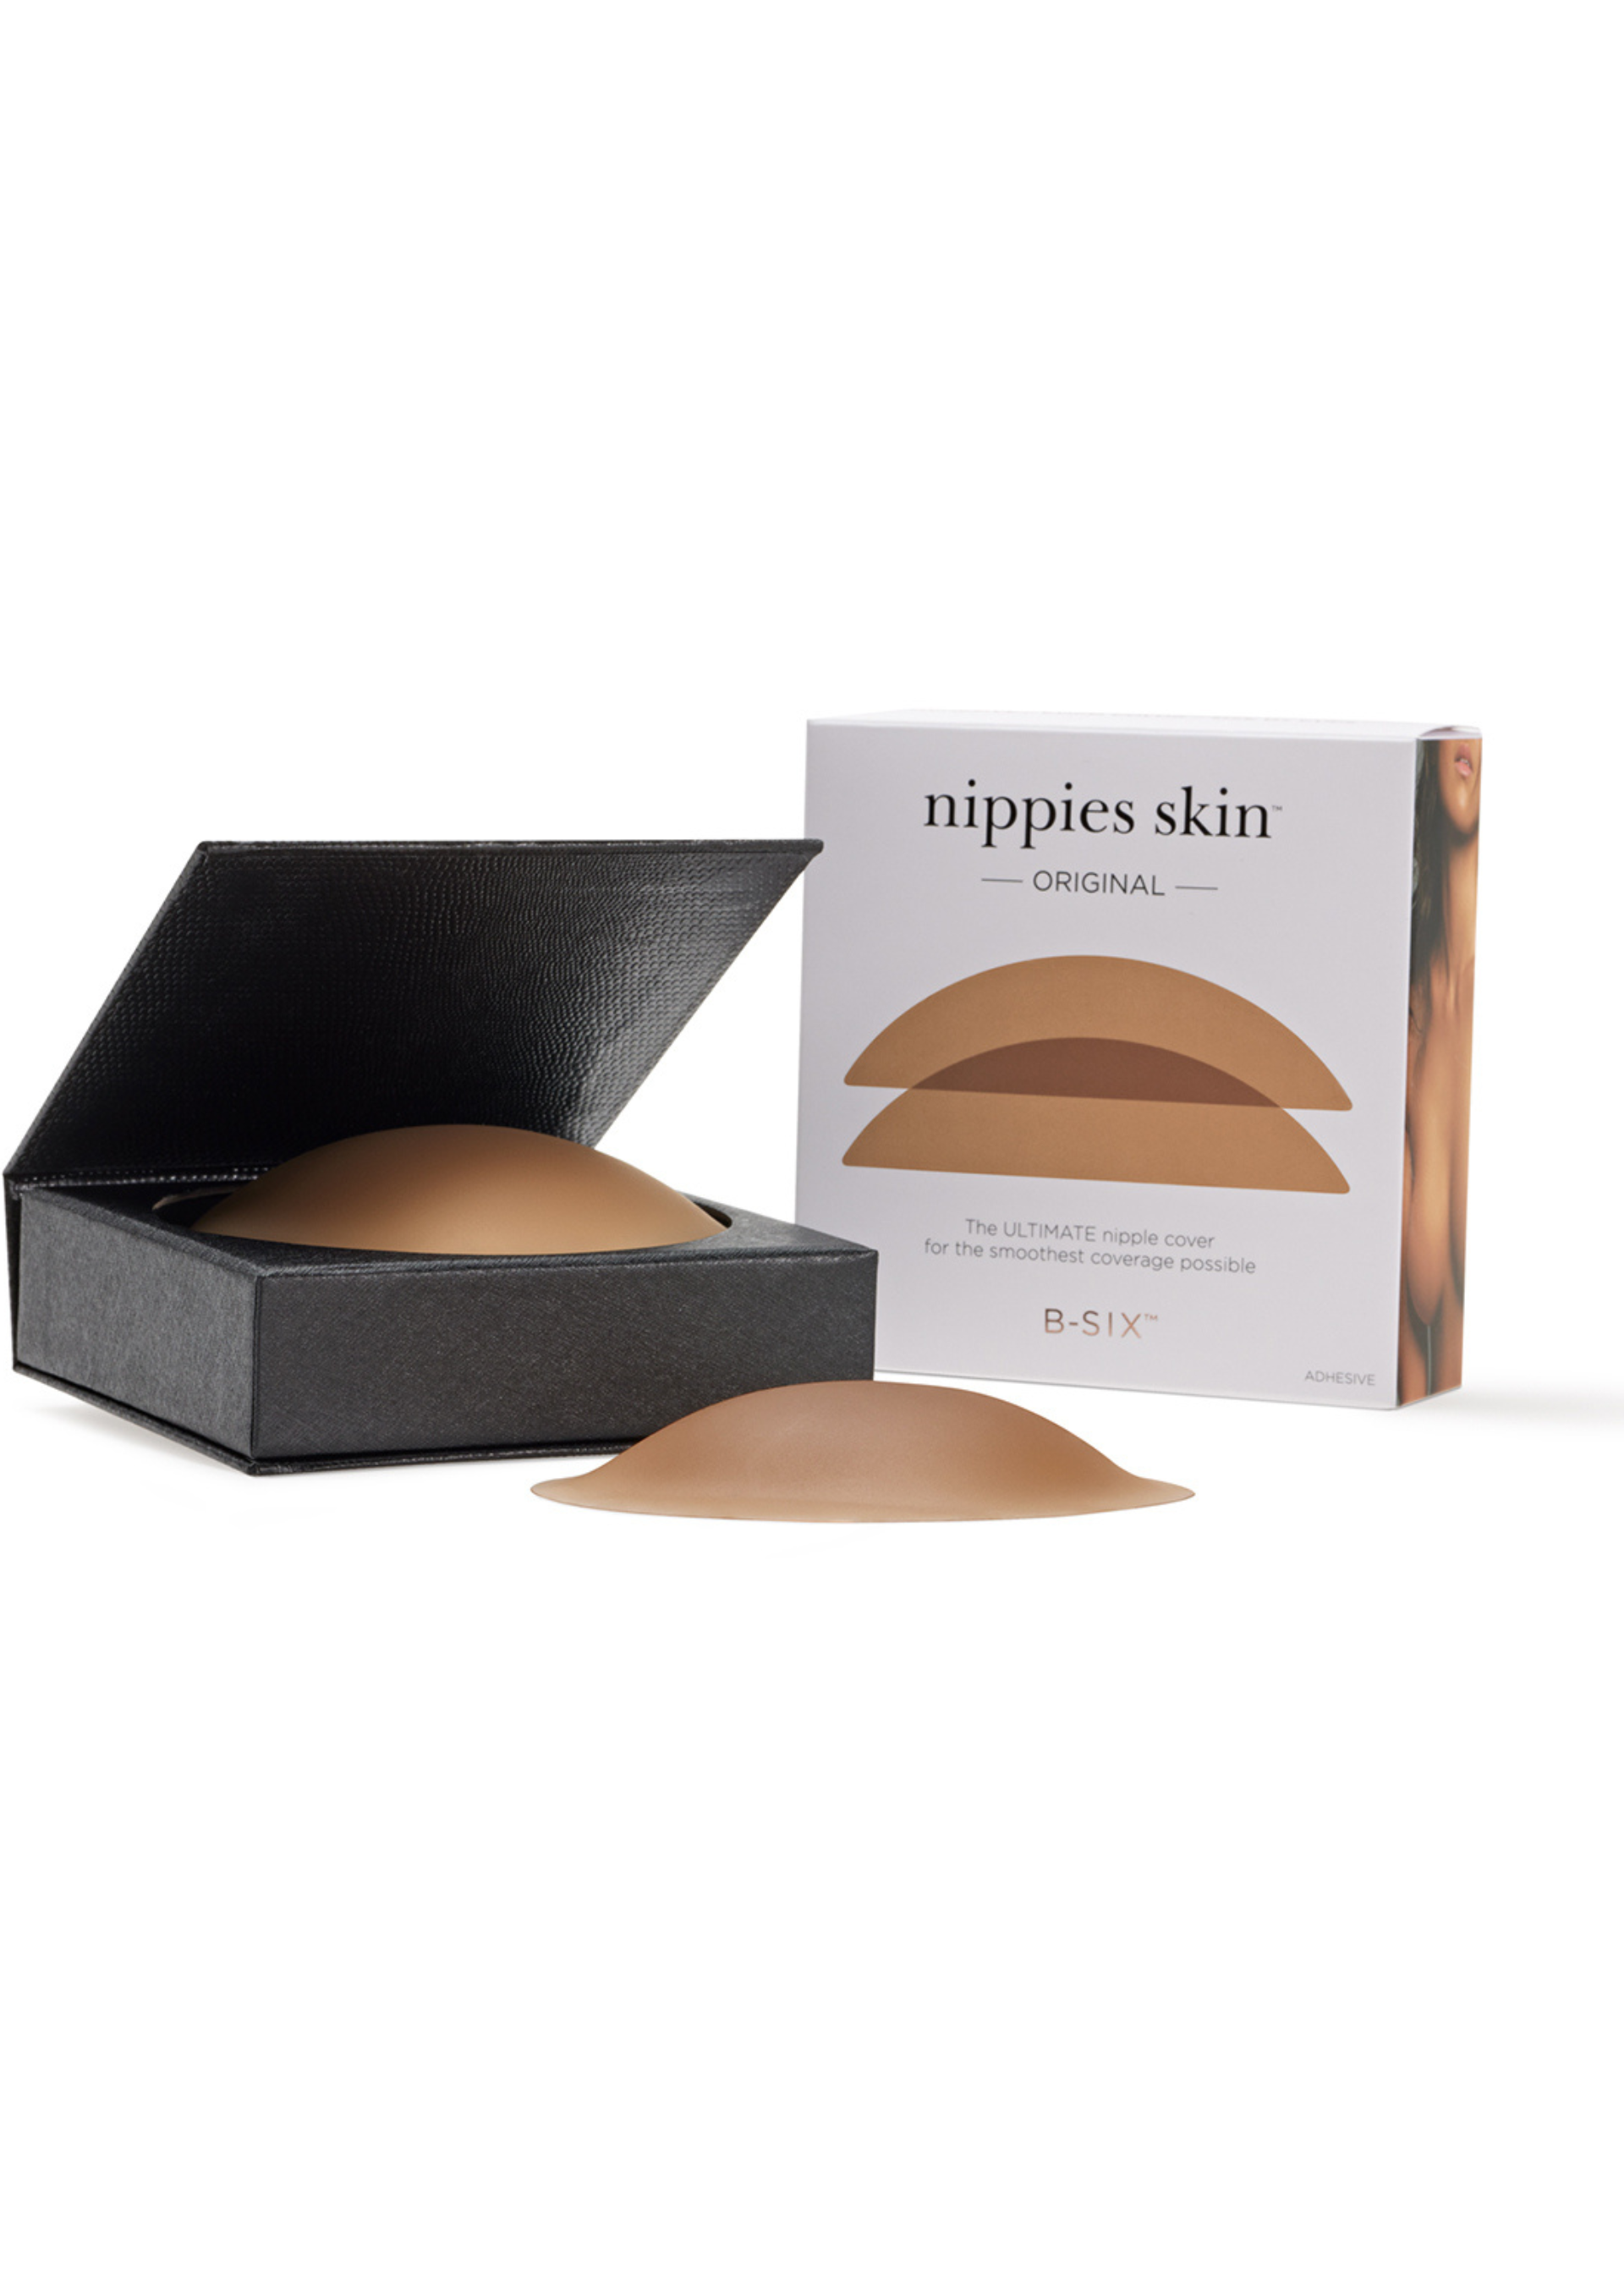 B-SIX Nippies Skin Lift Nipple Covers Espresso